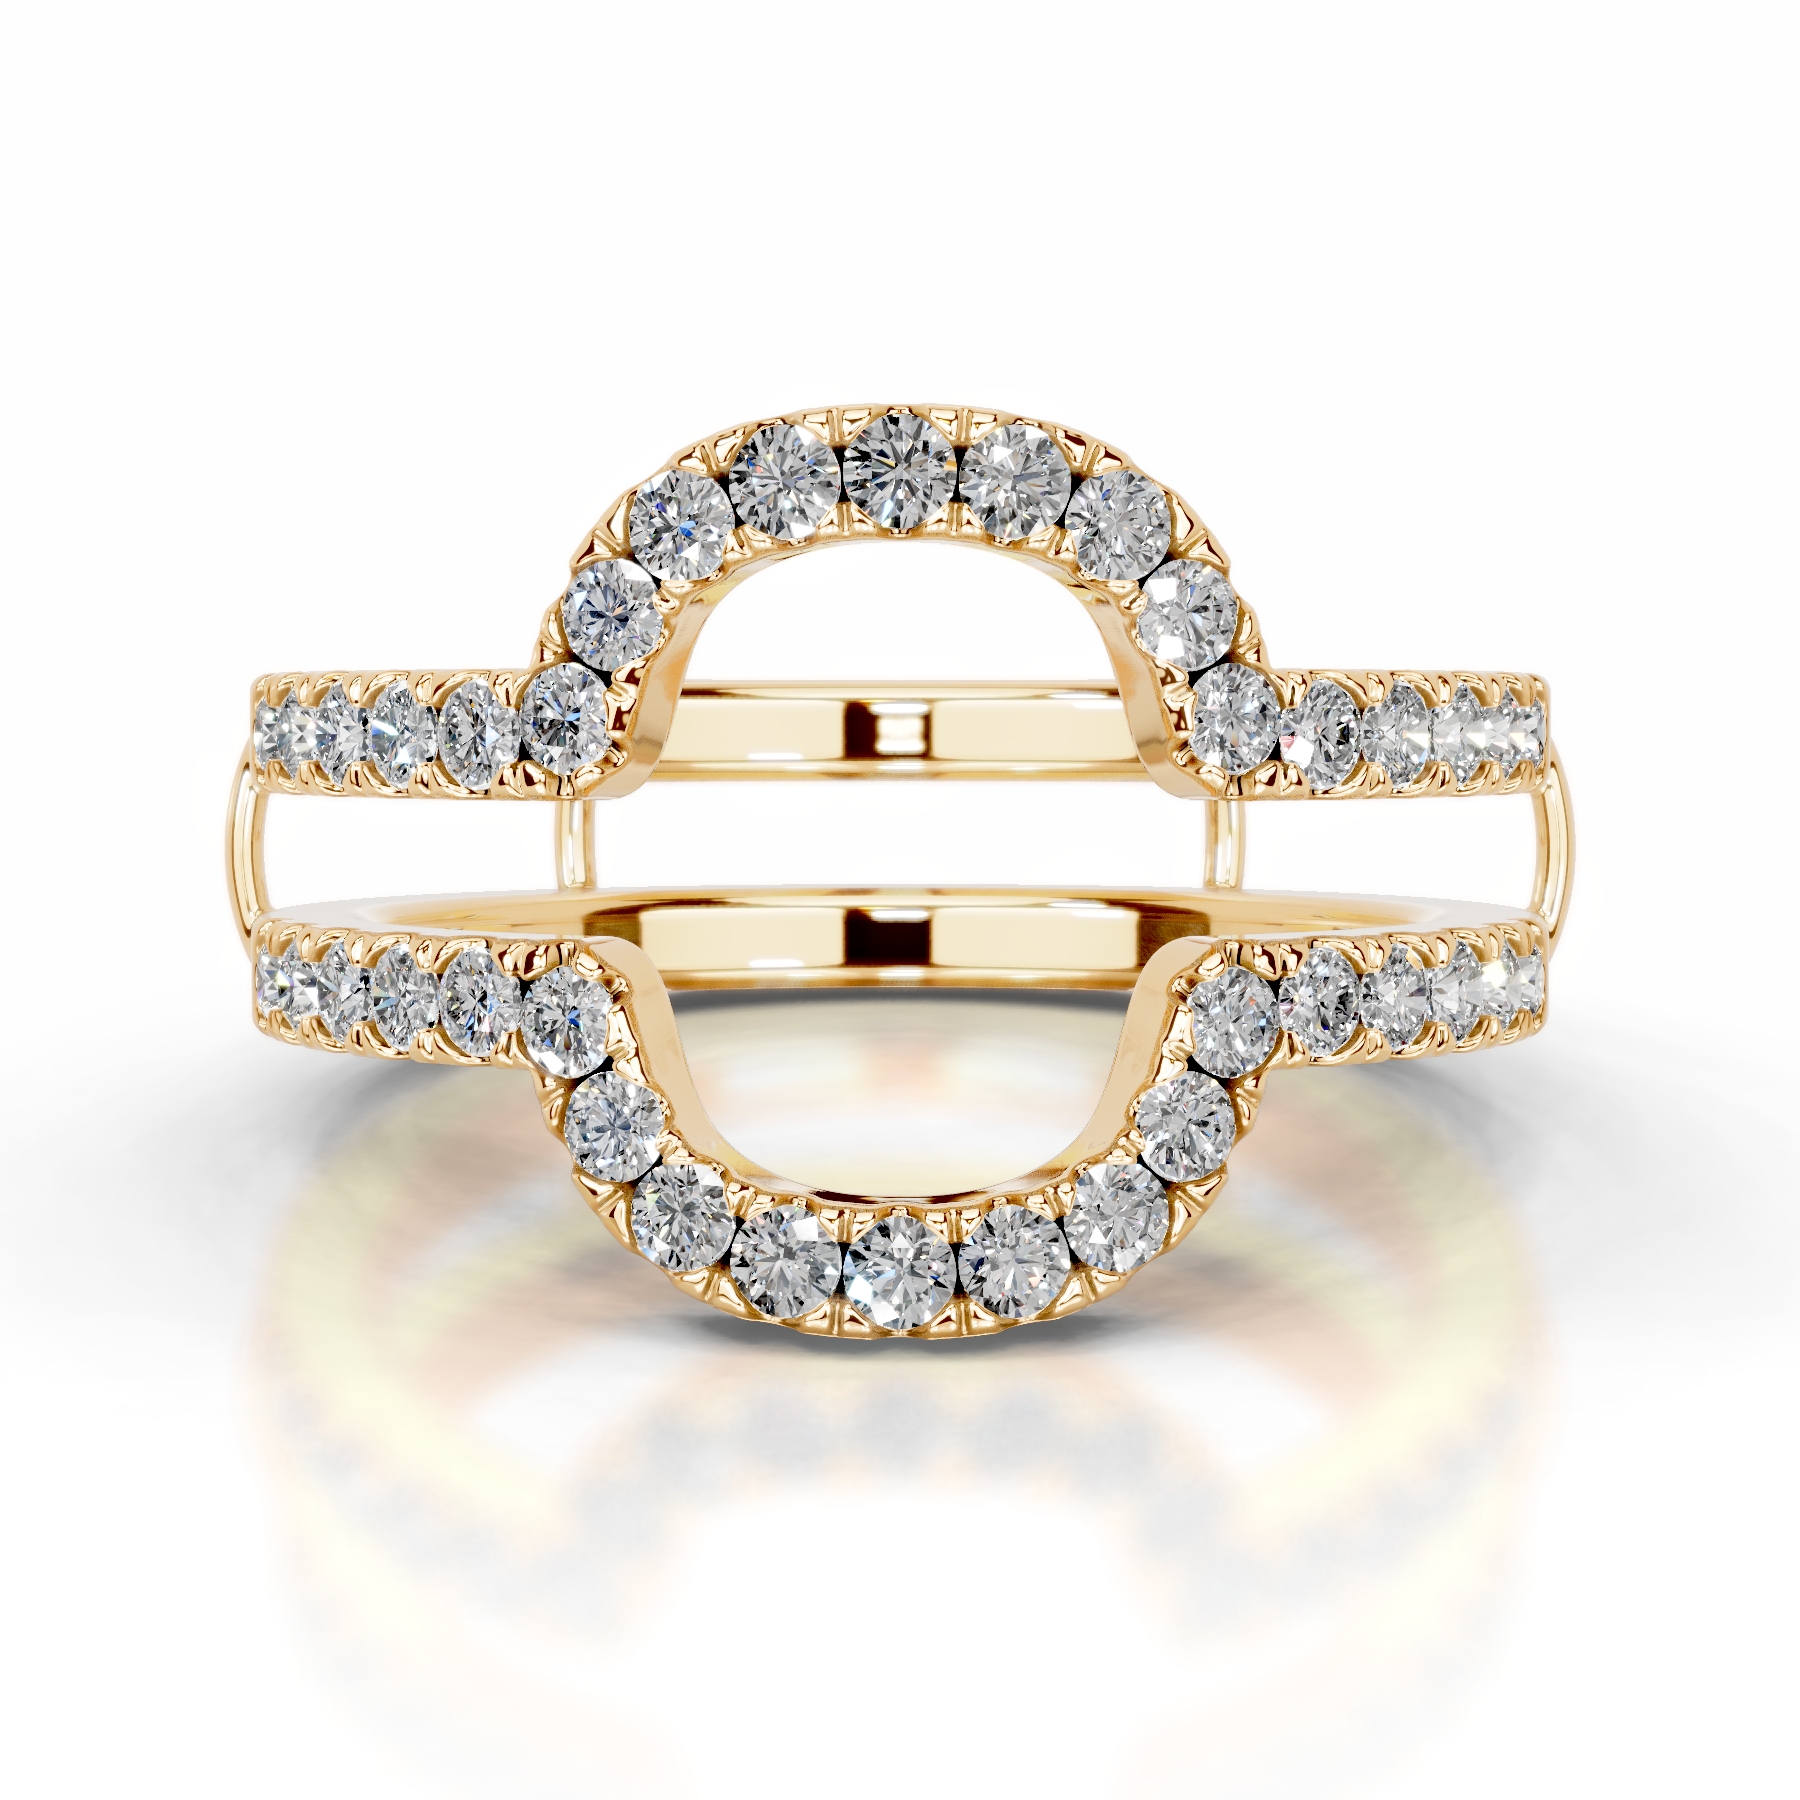 Yana Diamond Wedding Ring   (0.50 Carat) -18K Yellow Gold